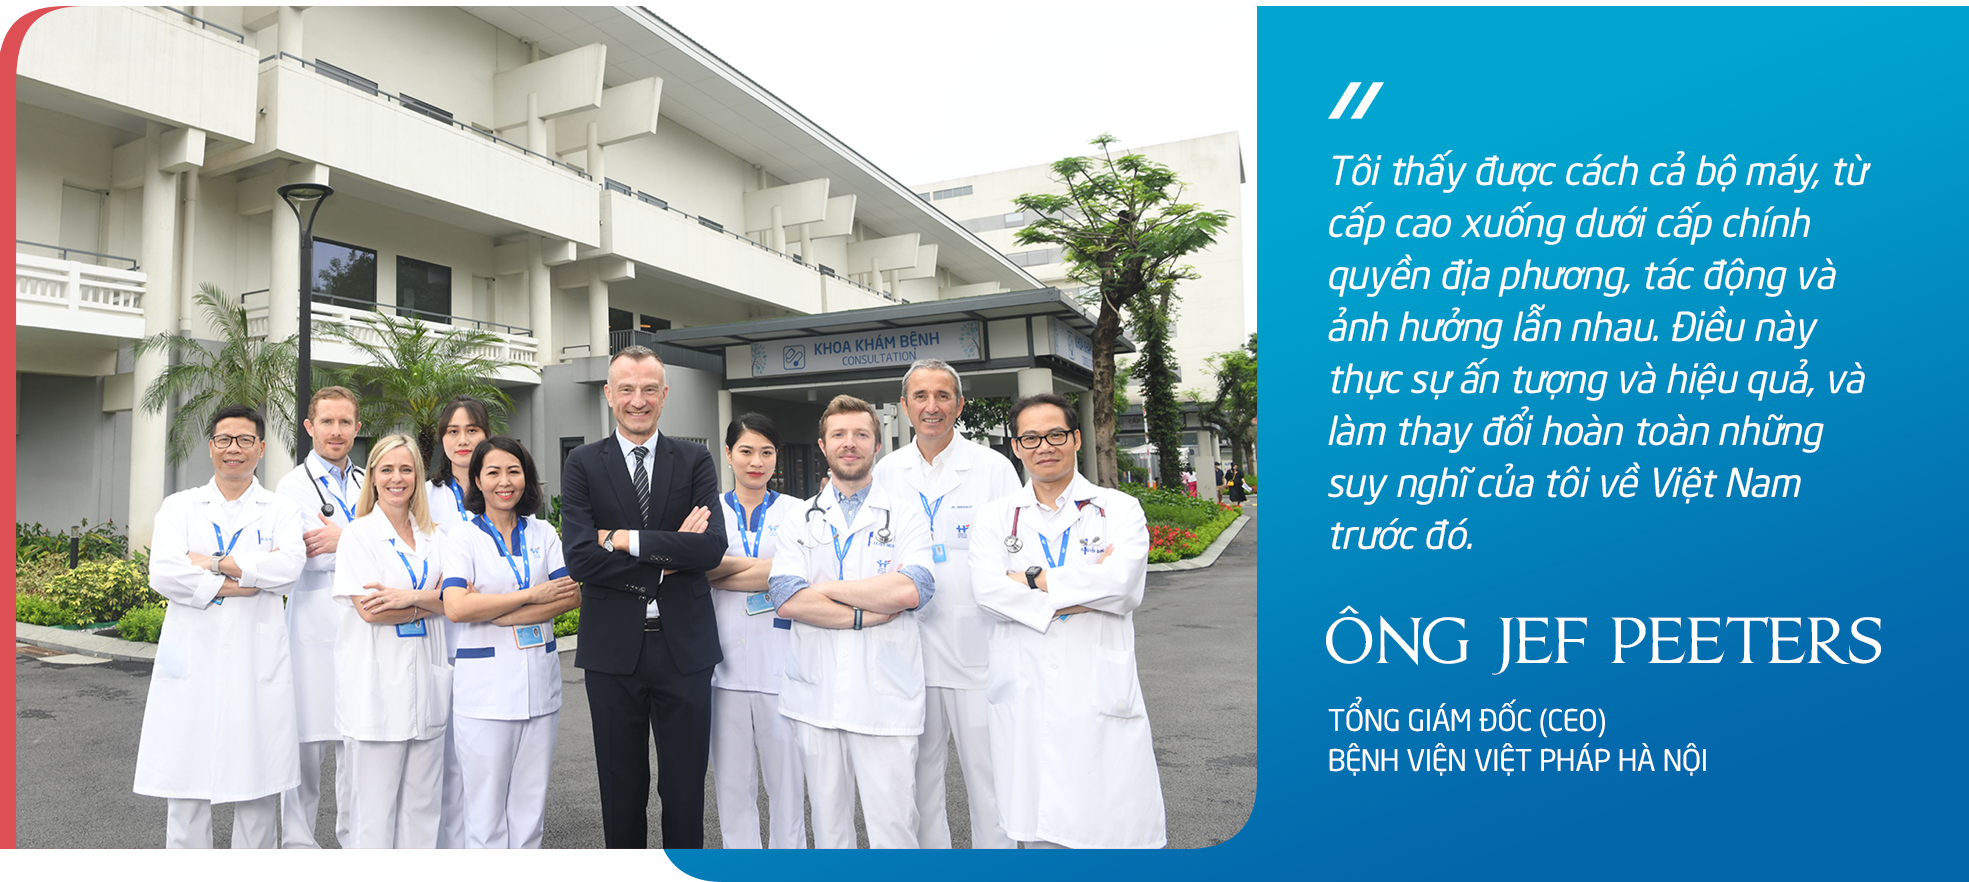 CEO Bệnh viện Việt Pháp Hà nội “Dịch vụ y tế xứng tầm là sự chăm sóc tổng hòa lấy con người làm trung tâm” - Ảnh 10.